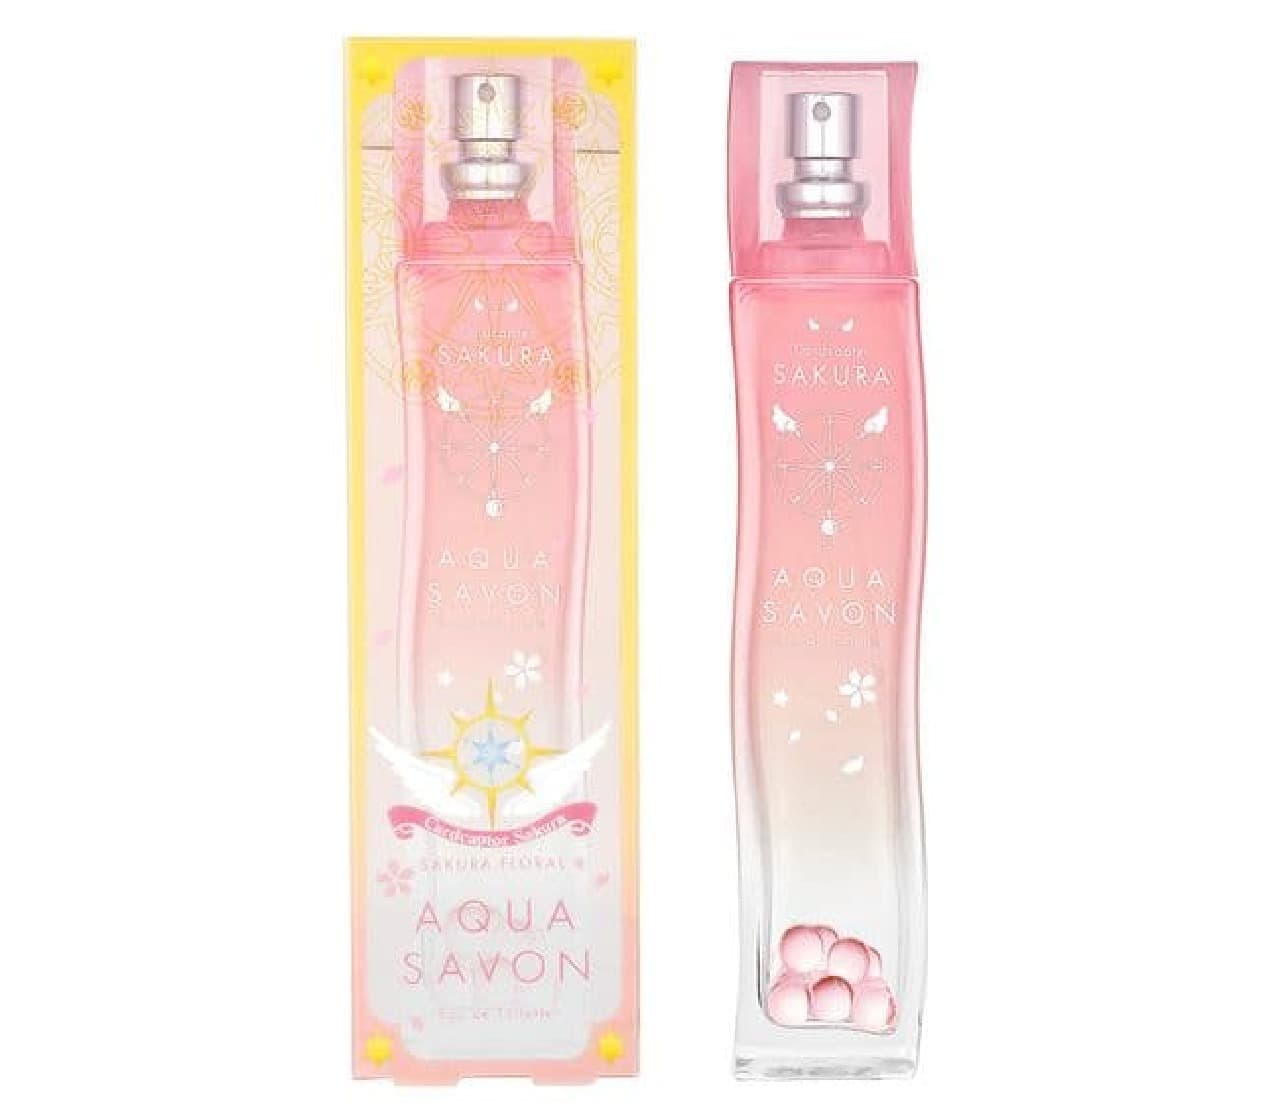 Aqua Chavon Sakura Floral Fragrance Eau de Toilette" limited edition design Vol. 3